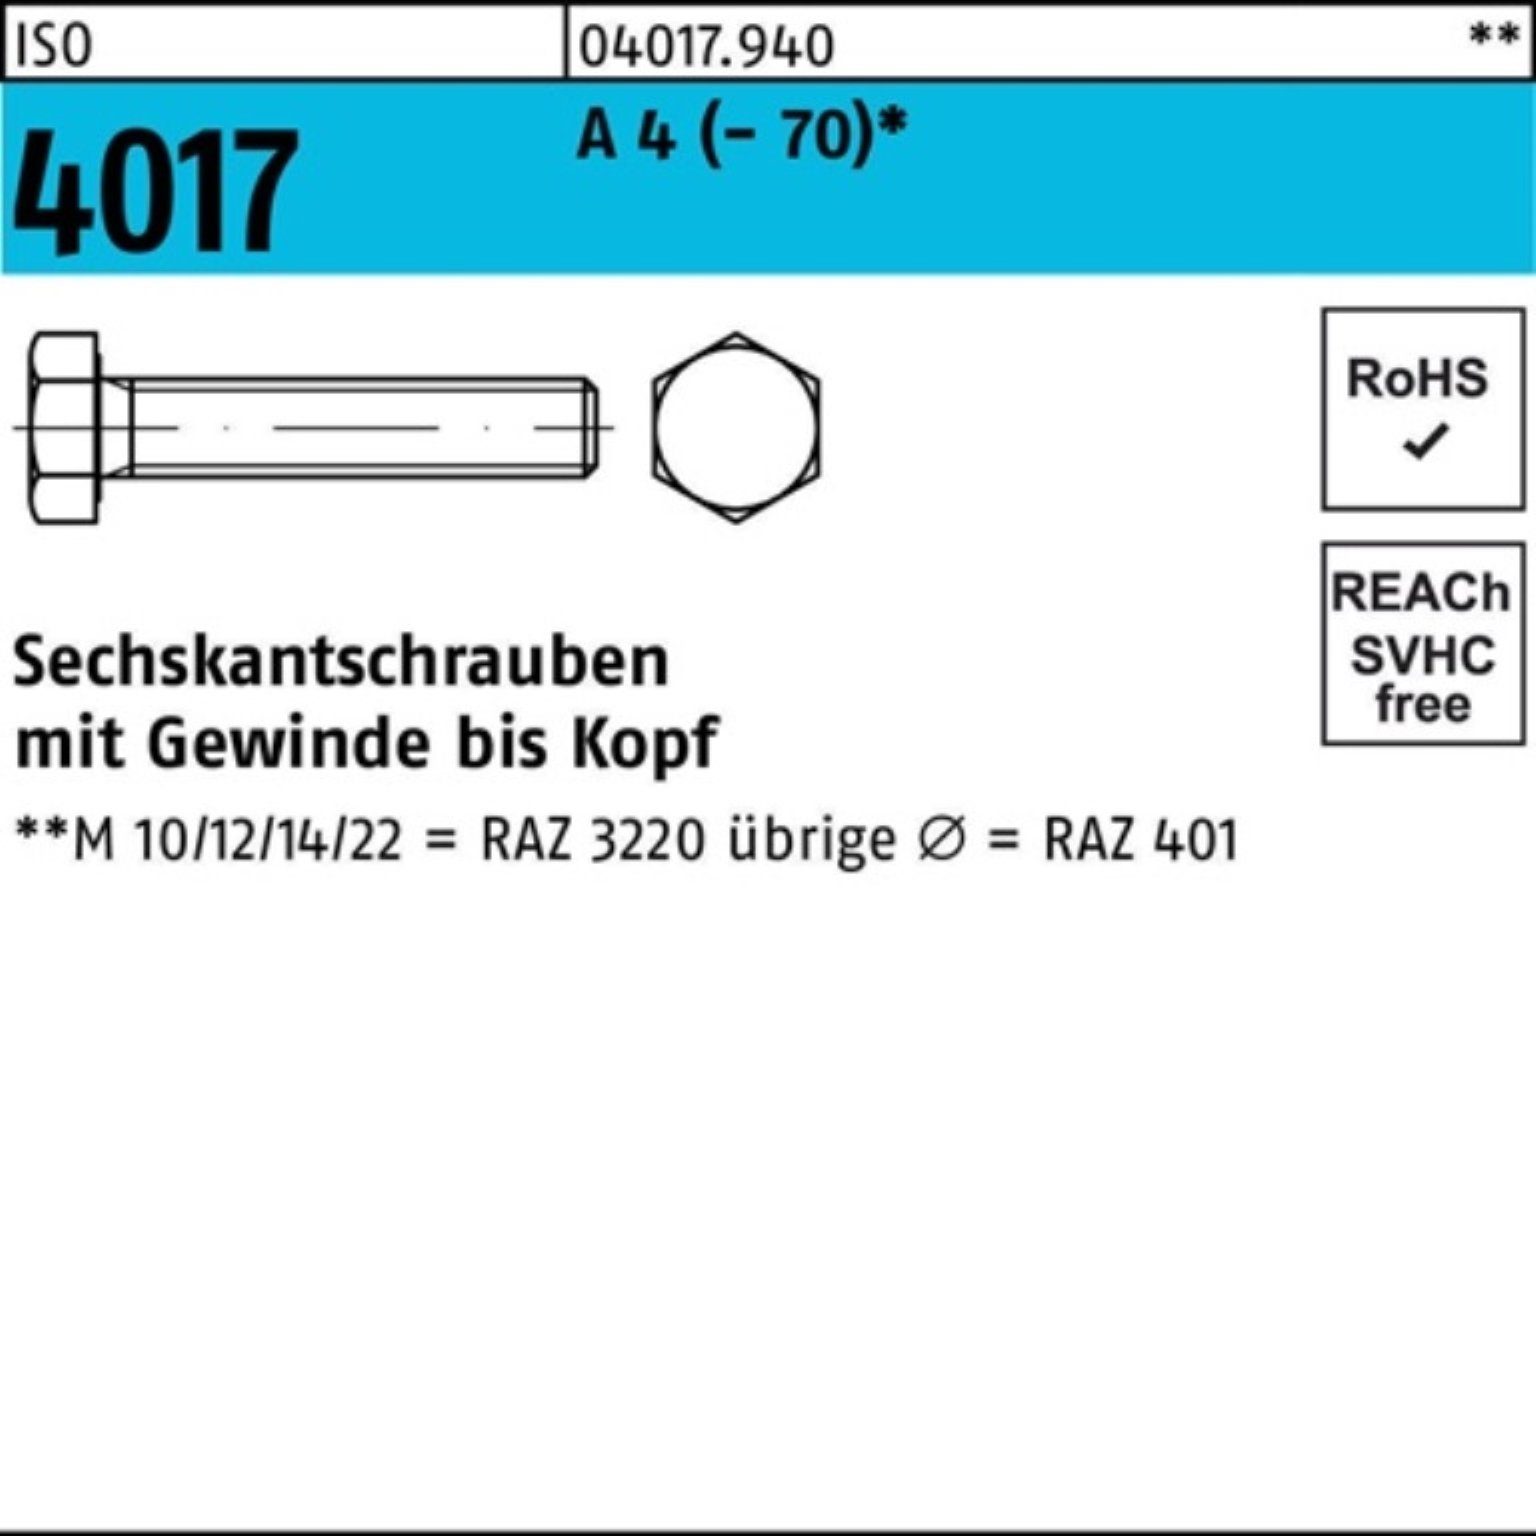 Bufab Sechskantschraube 100er Pack M10x 100 (70) Sechskantschraube 40 4017 4 VG A ISO Stück